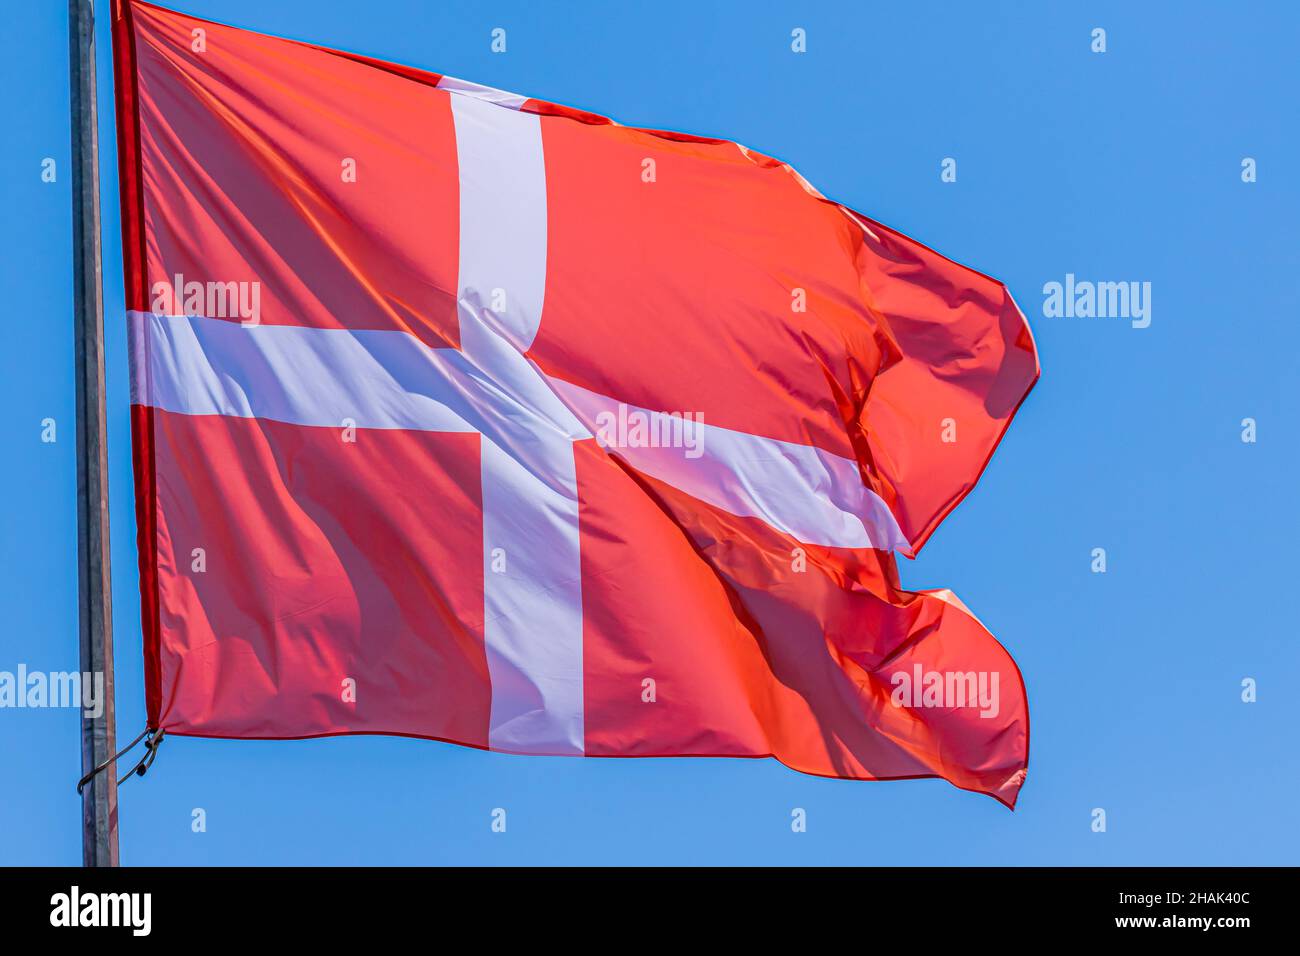 Dänische Nationalflagge winkt auf blauem Himmel Hintergrund. Königreich Dänemark, DK Stockfoto